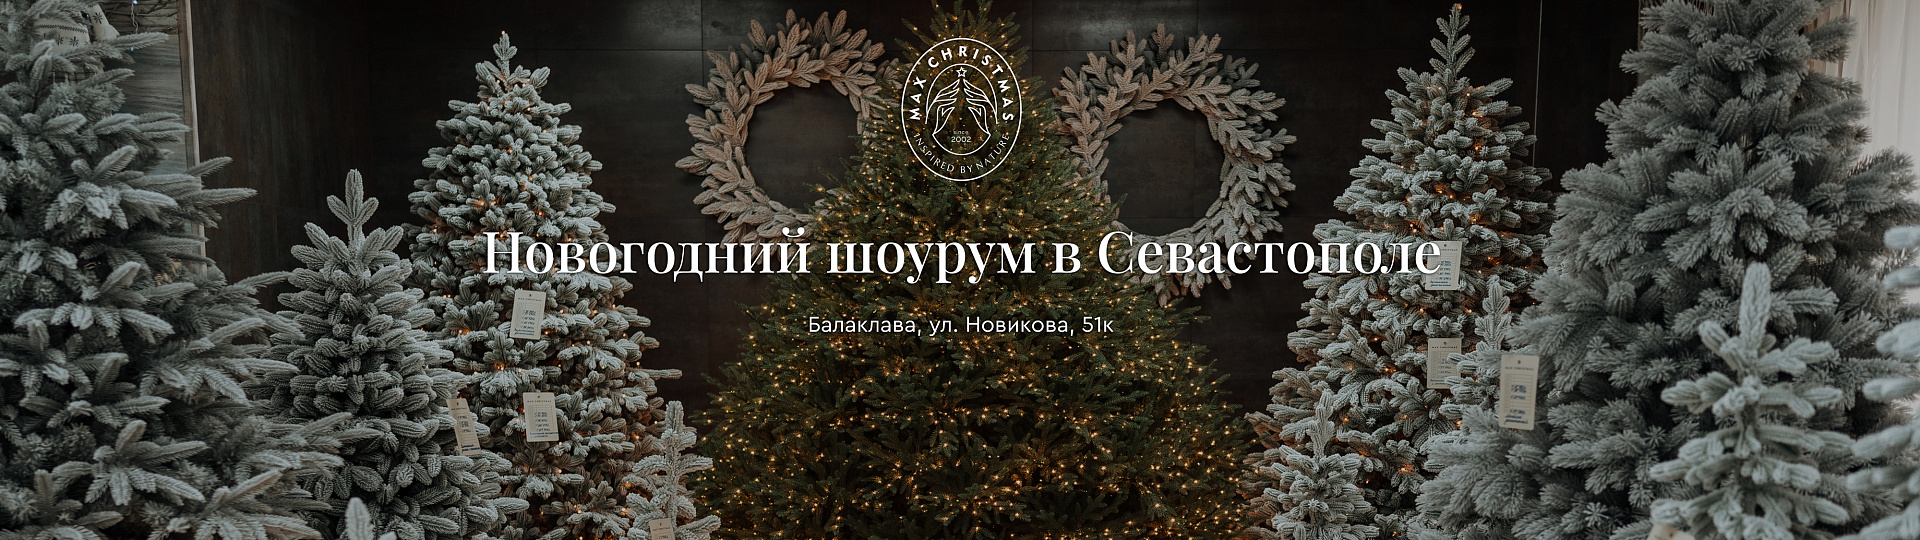 Новогодний Магазин в Севастополе